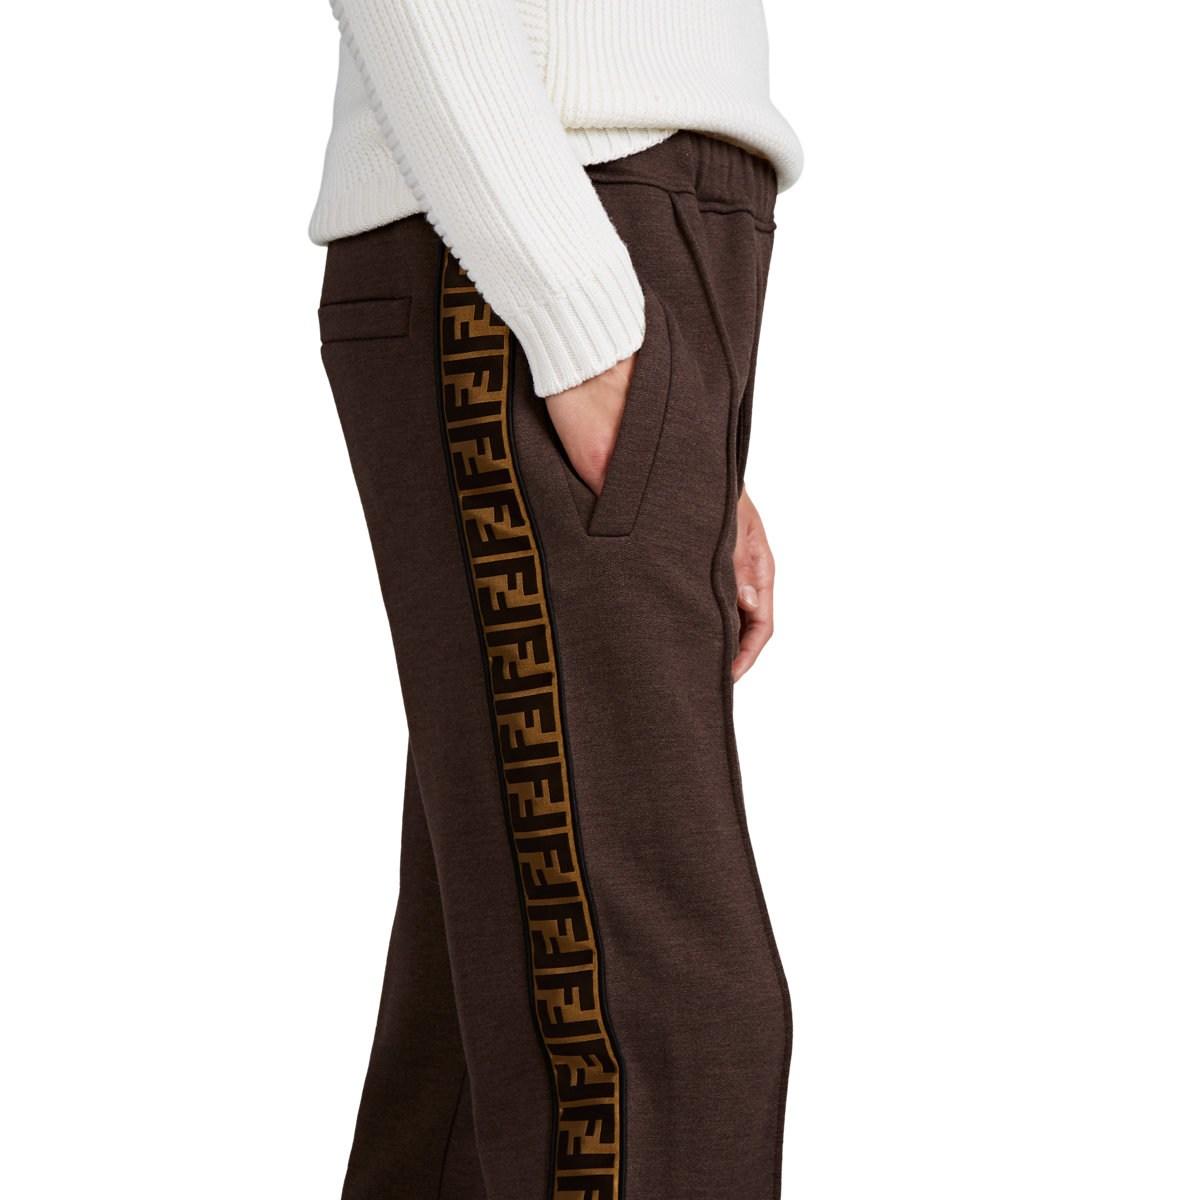 Fendi Logo-striped Cotton-blend Fleece Sweatpants in Brown for Men - Lyst